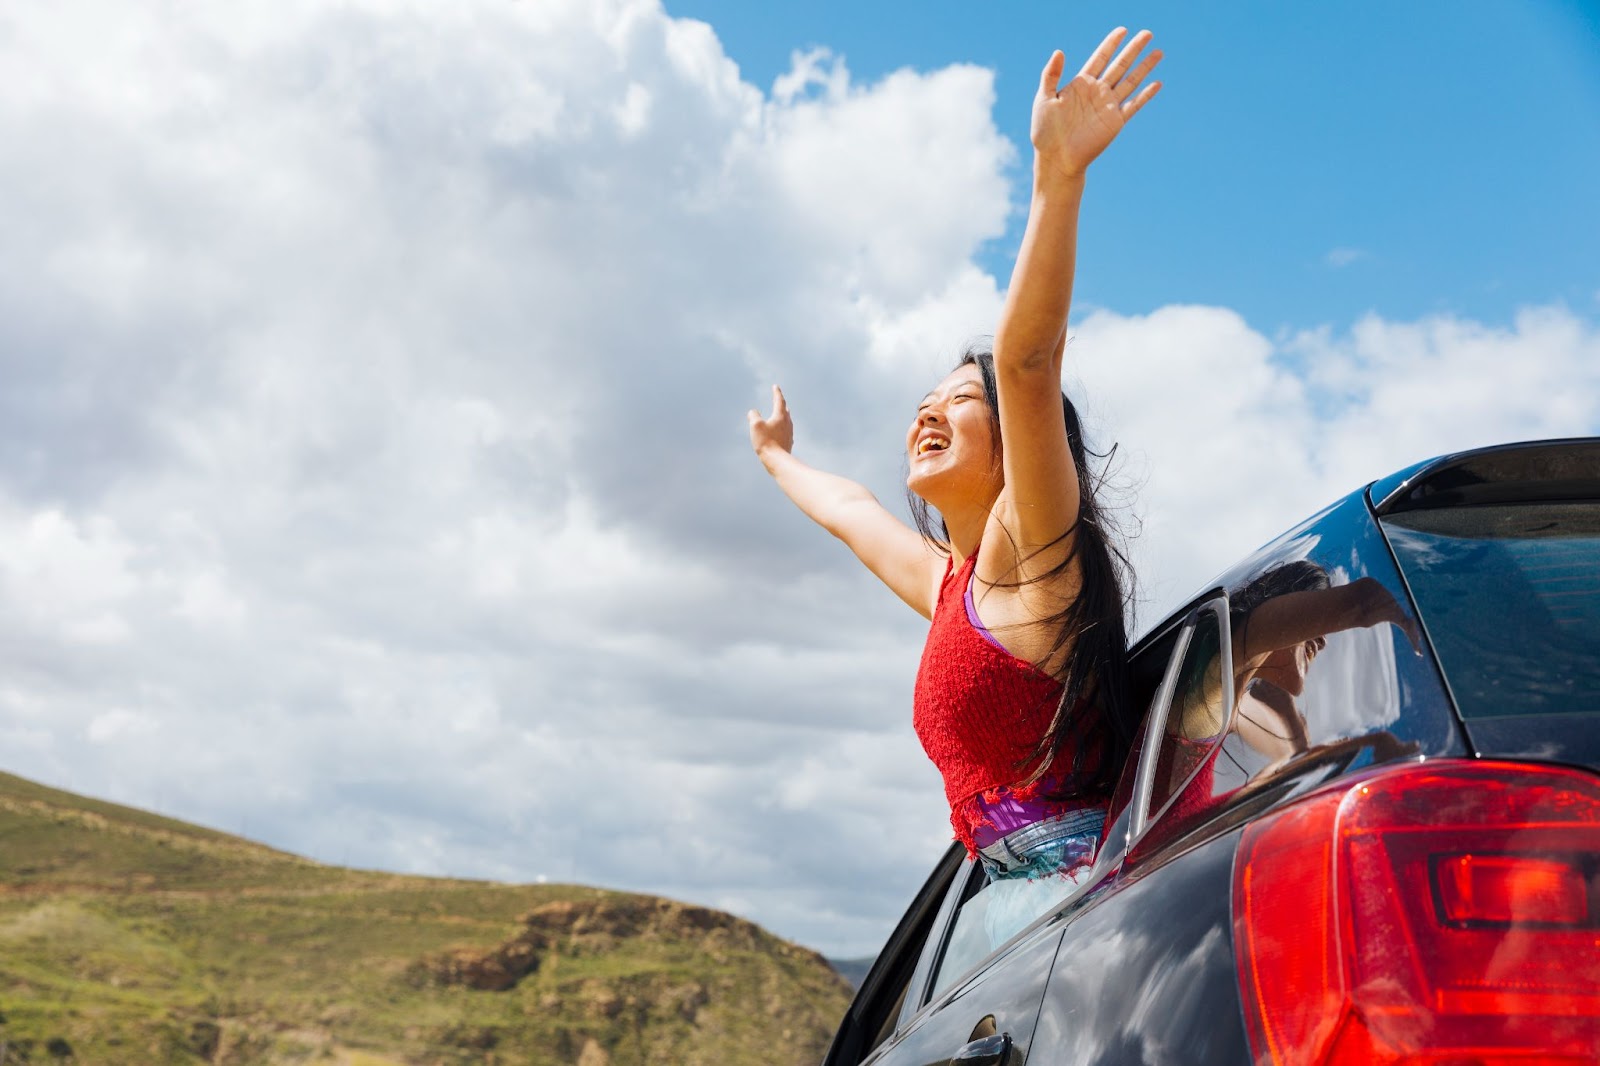 Uma mulher em uma viagem de carro pelo Brasil, encontra-se com metade do corpo para fora da janela do veículo, estendendo os braços e exibindo um sorriso enquanto aprecia a paisagem natural durante o dia